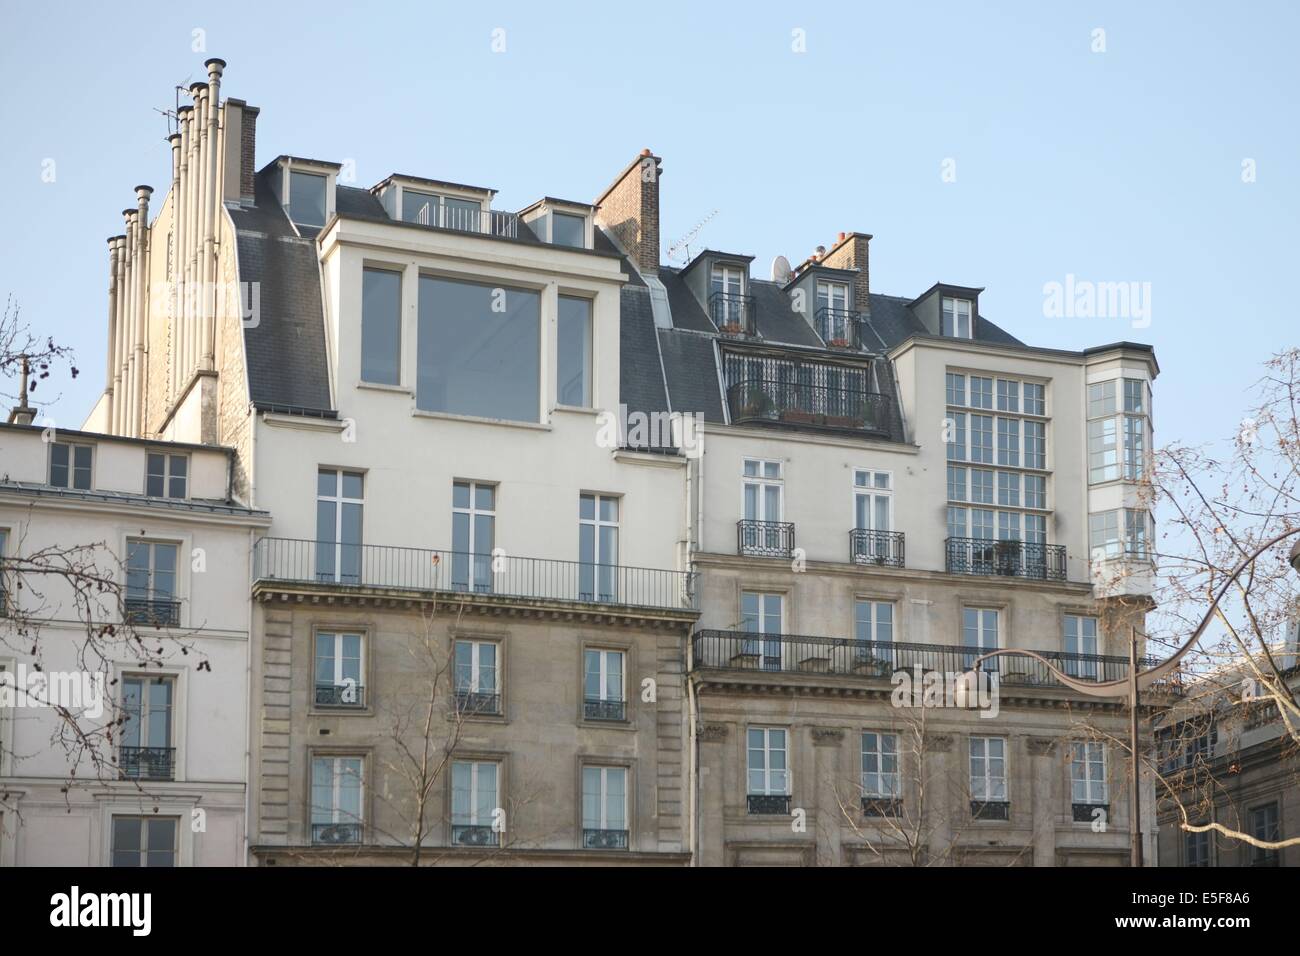 France, ile de france, paris 5e arrondissement, 21 quai malaquais, haut inattendu d'un immeuble, elevation. Date : 2011-2012 Stock Photo